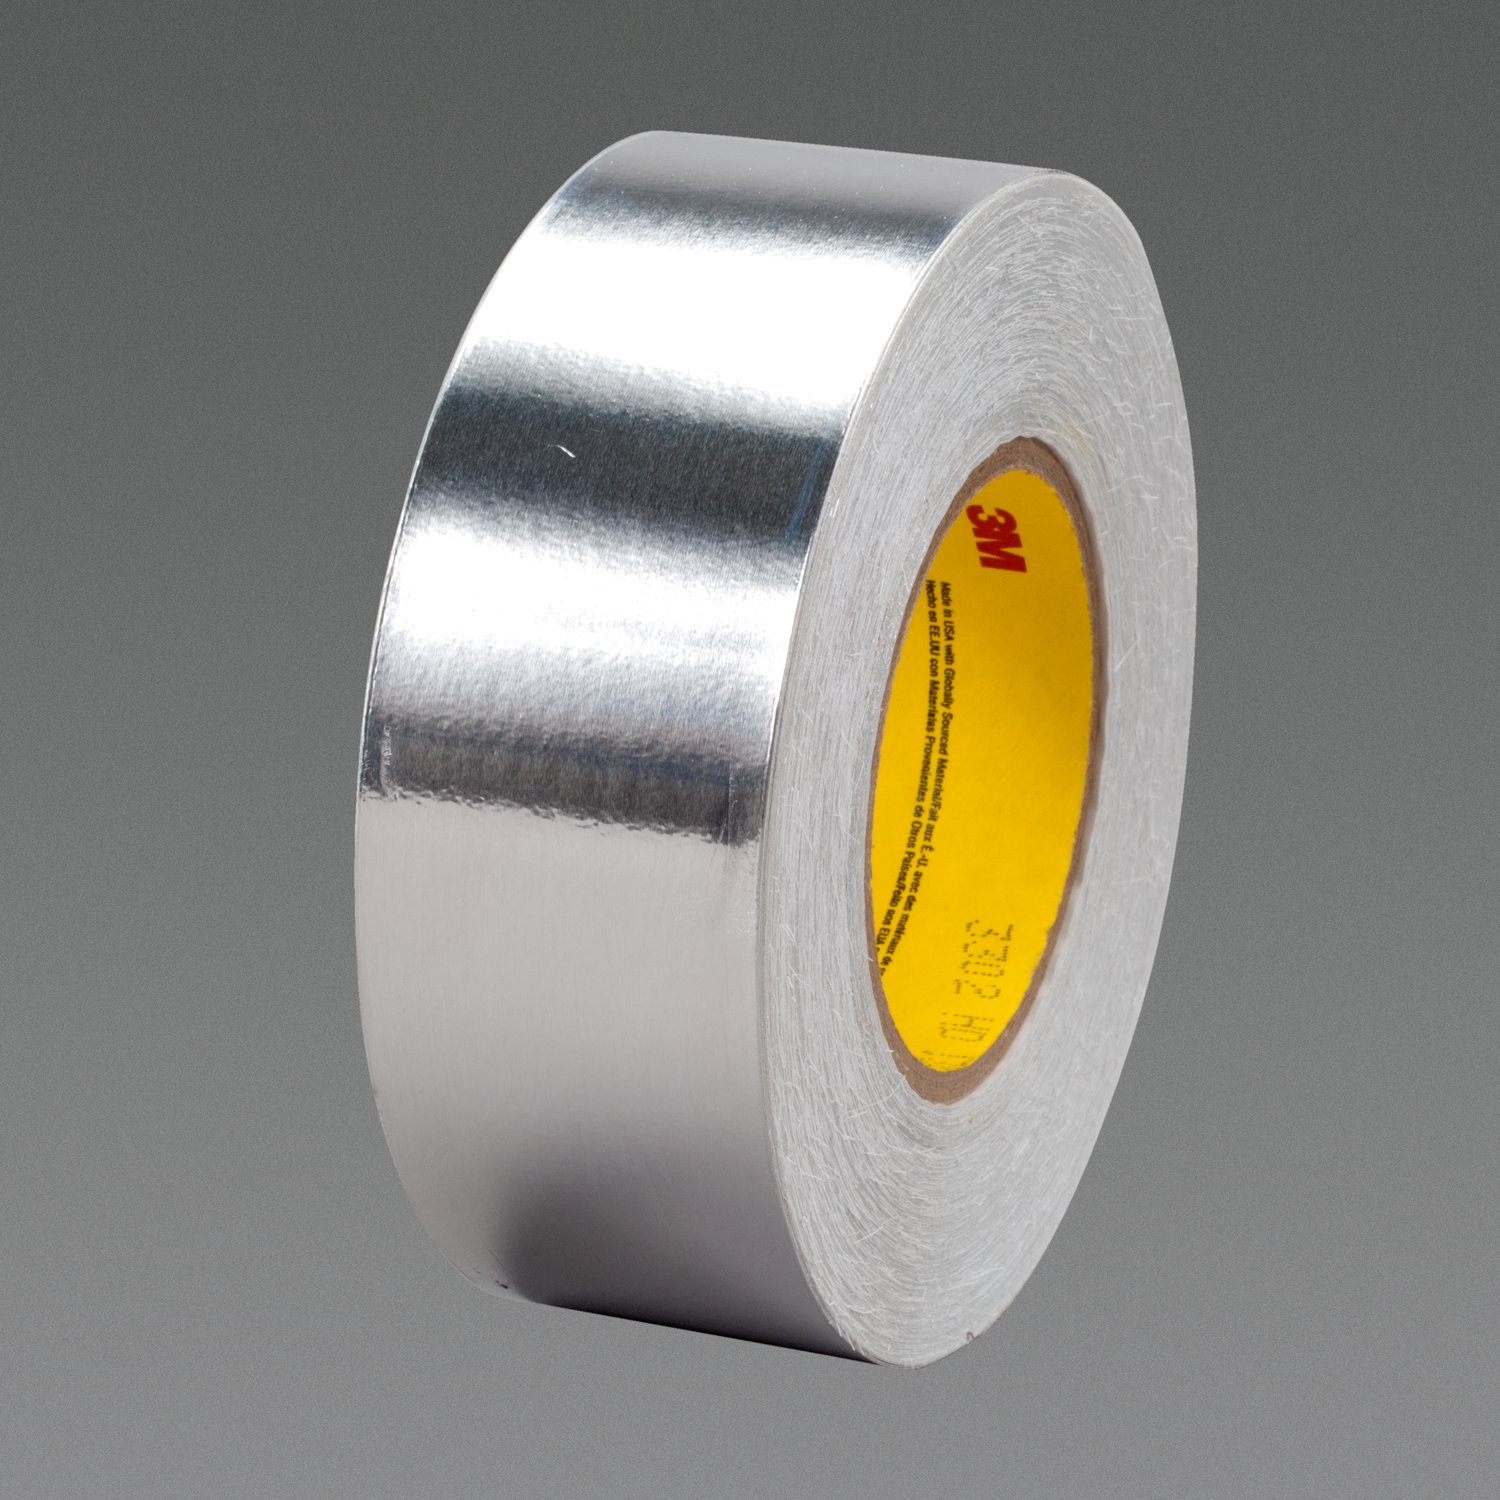 3M 425 Aluminum Foil Tape LT80 Silver, 2 in x 60 yd 4.6 mil, 24 Rolls per Case Bulk